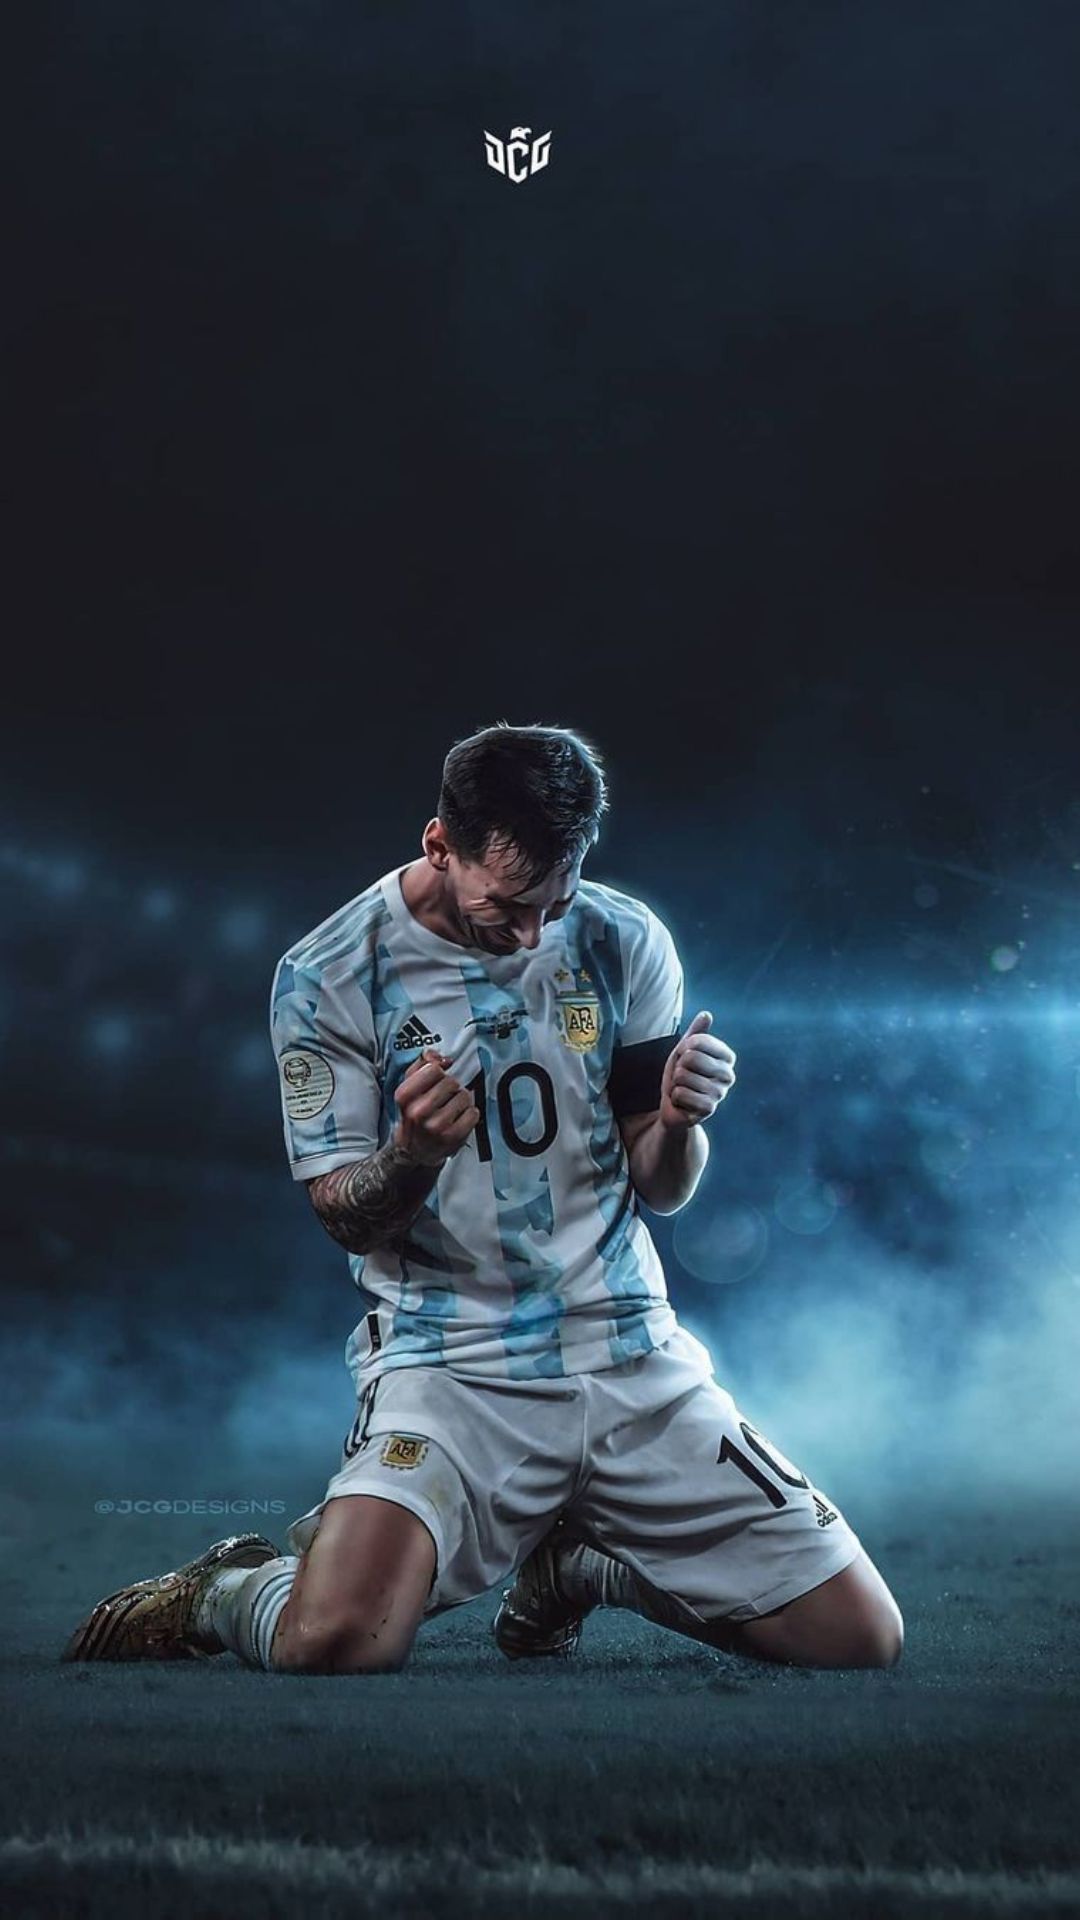 Nếu bạn là fan của Messi và đang tìm kiếm một wallpaper đẹp trên iPhone của mình, đây là điểm đến hoàn hảo. Với những hình ảnh tuyệt đẹp về Messi và Argentina, bạn sẽ có ngay một màn hình khóa đẹp mắt và thú vị.